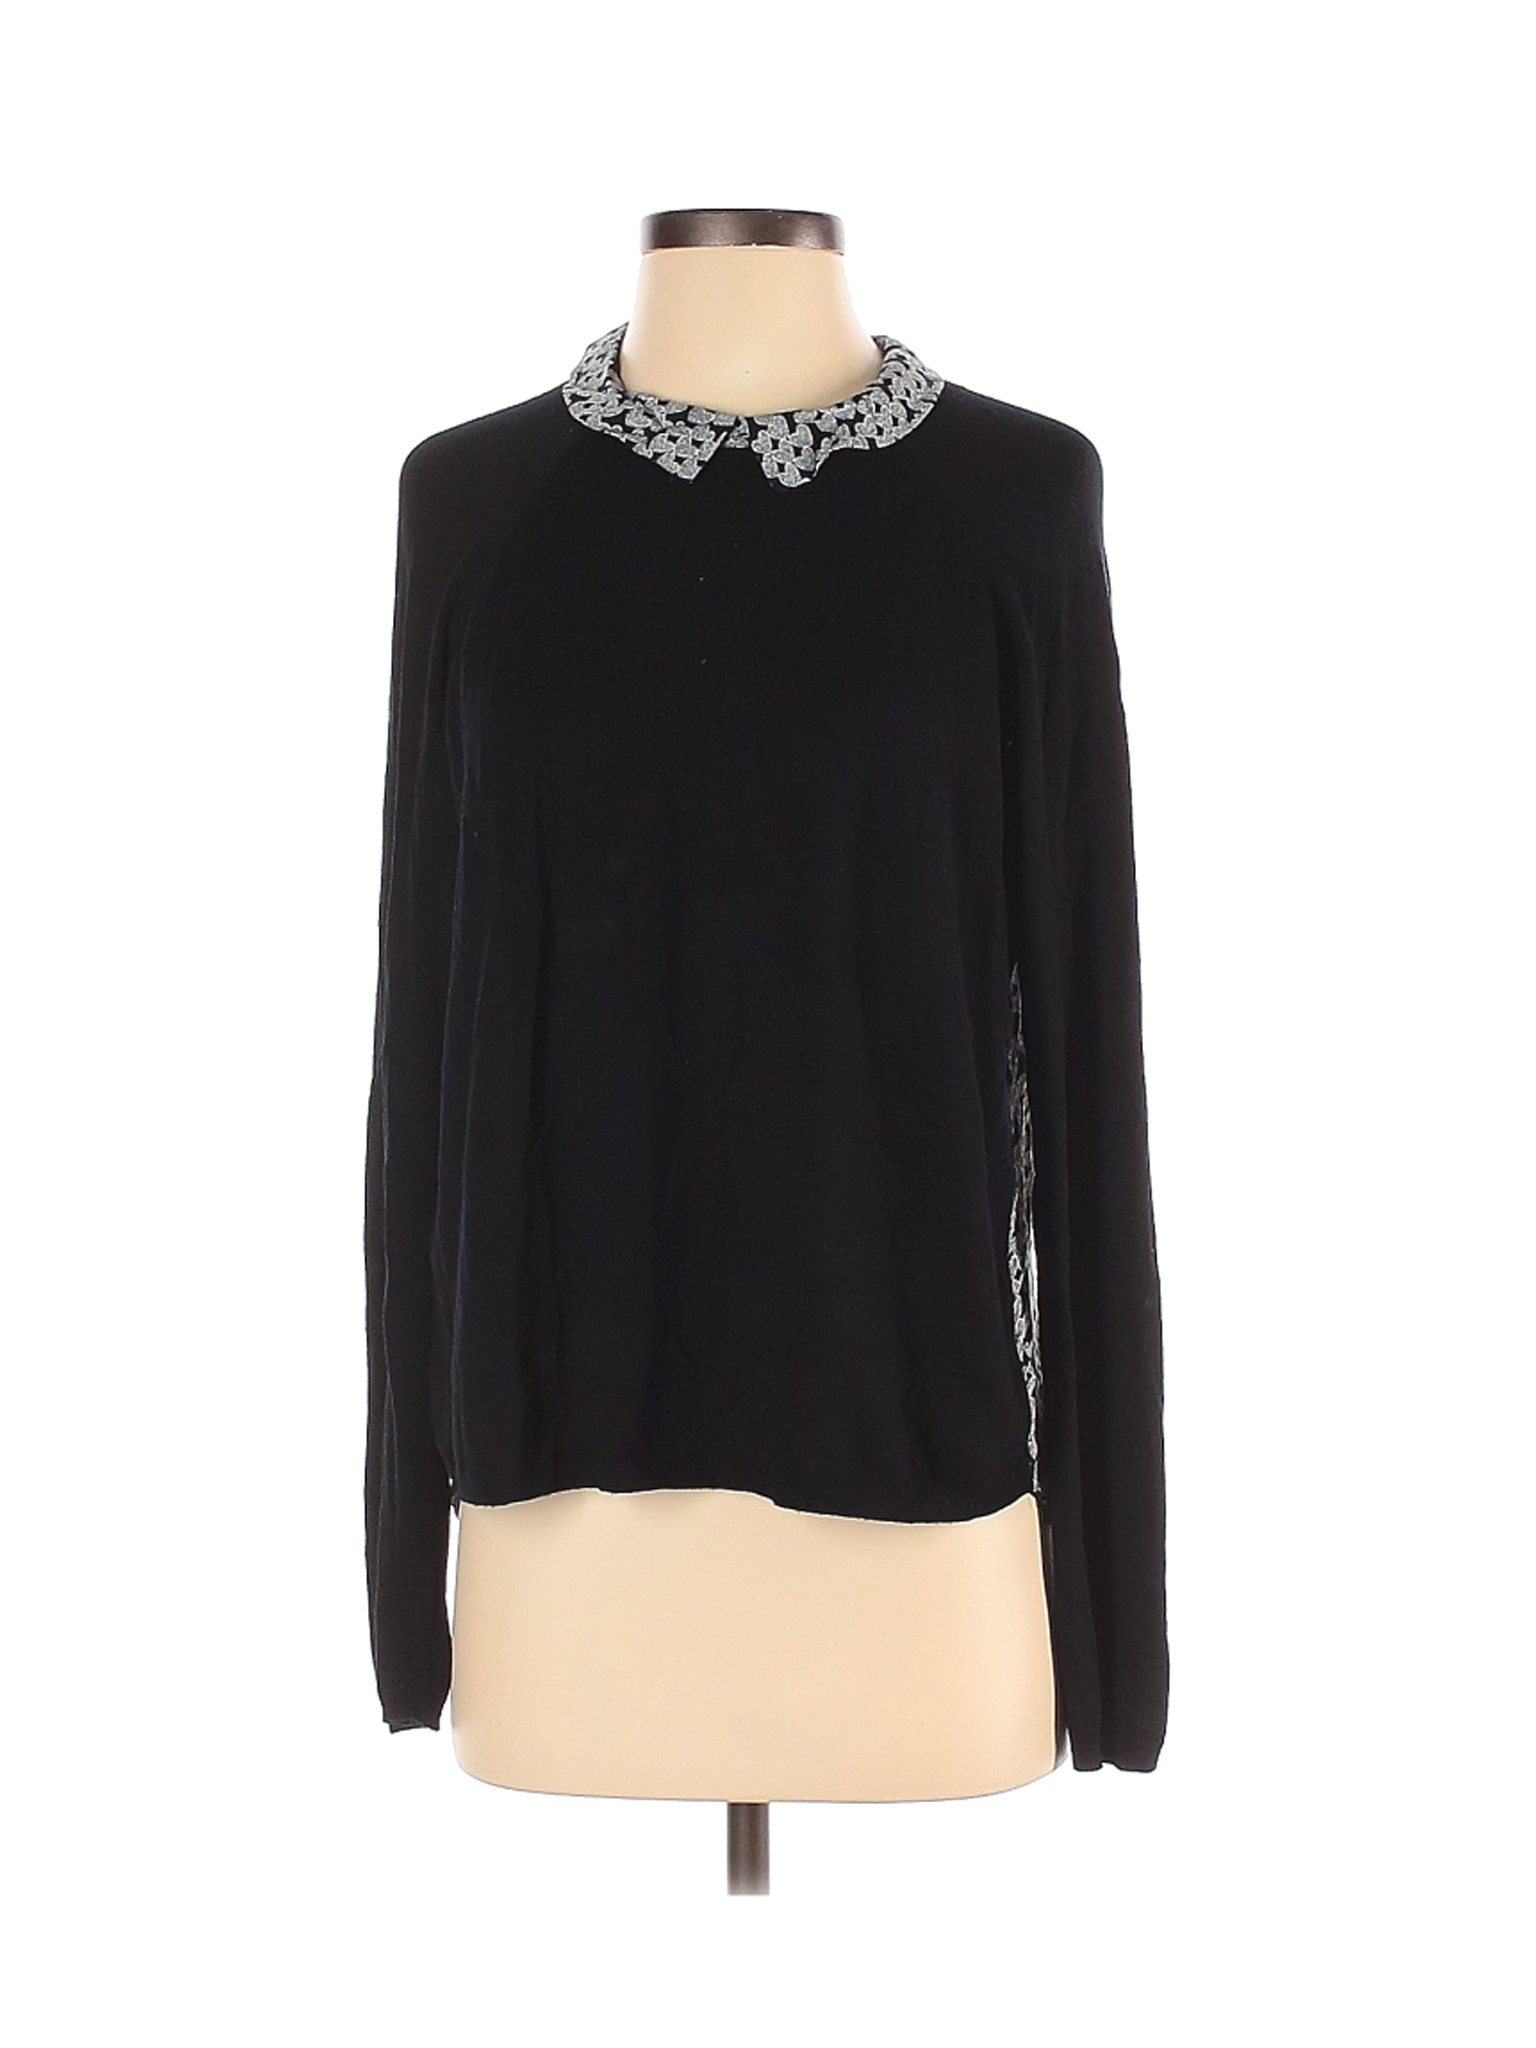 Kookai Women Black Long Sleeve Top S | eBay